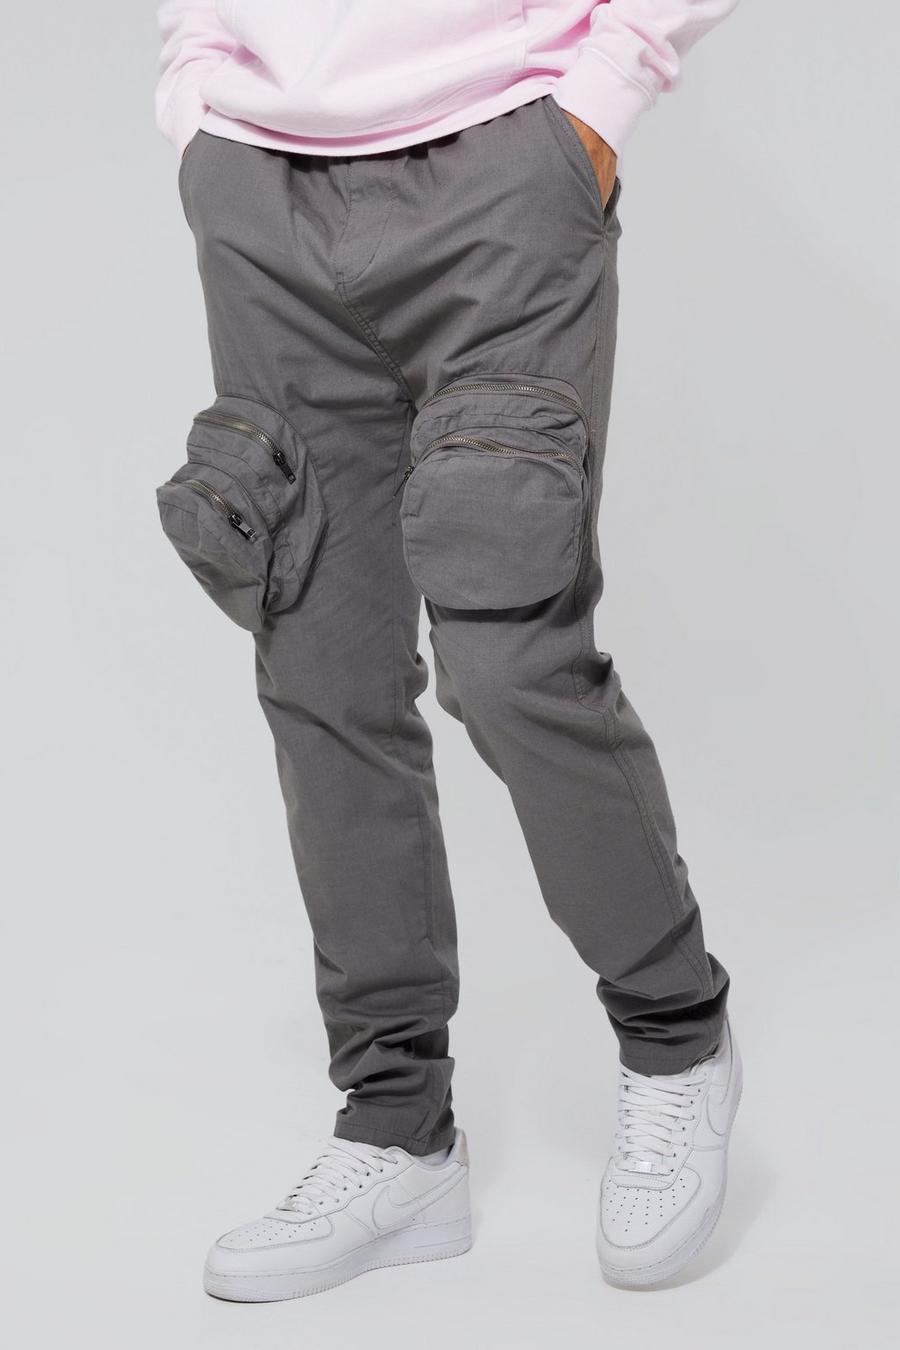 אפור מכנסי דגמ"ח אלגנטיים בגזרה צרה עם רוכסן 3D, לגברים גבוהים  image number 1